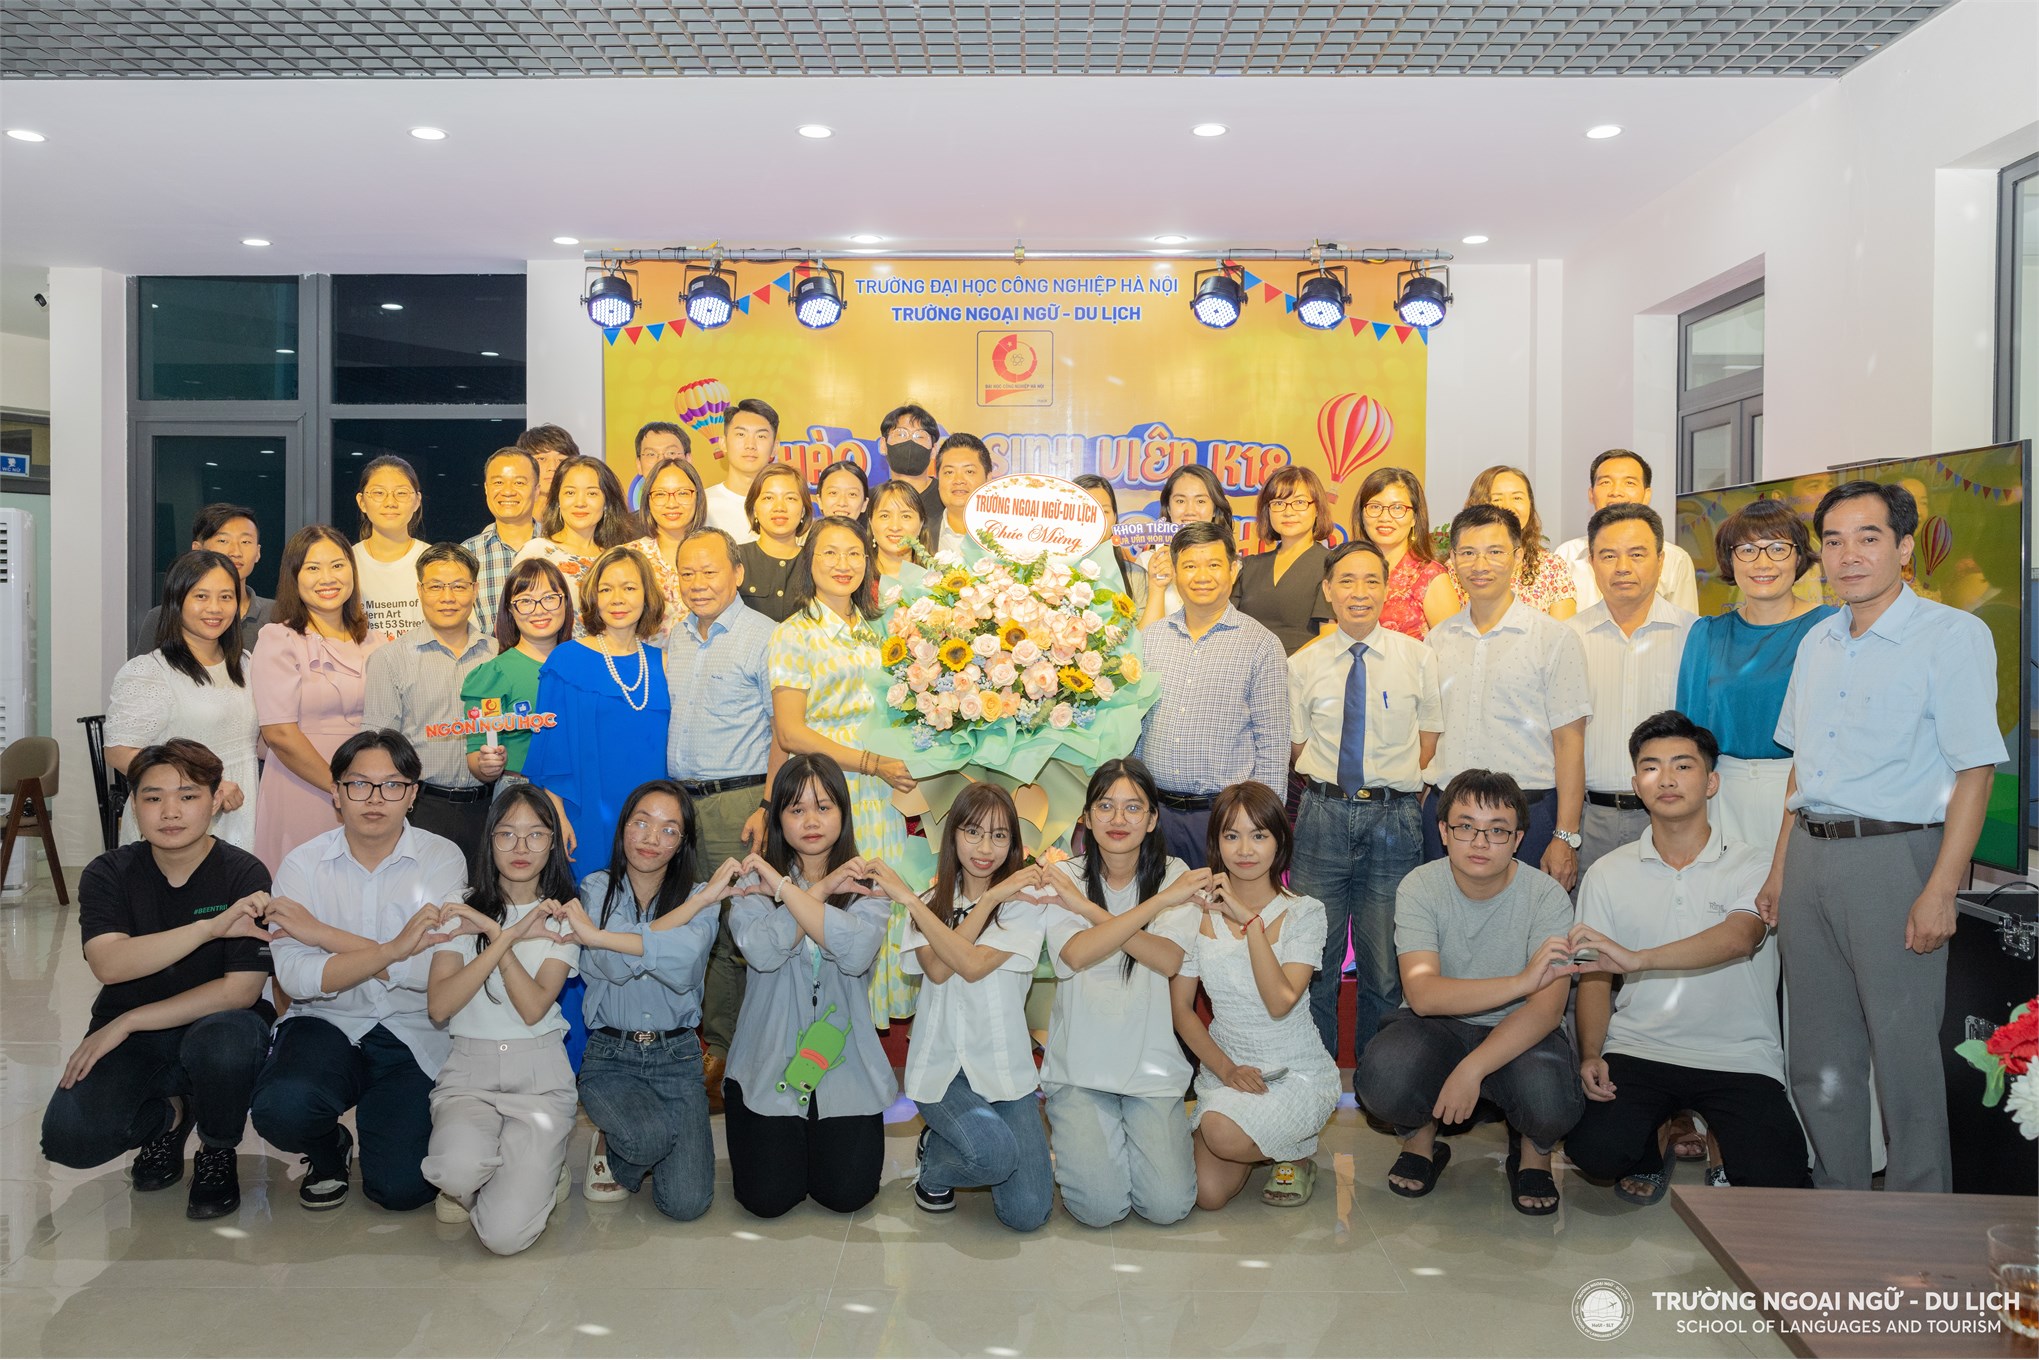 Chào đón những nhân tố đầu tiên ngành Ngôn ngữ học, Khoa Tiếng Việt và Văn hoá Việt Nam, Trường Ngoại ngữ - Du lịch, Trường Đại học Công nghiệp Hà Nội